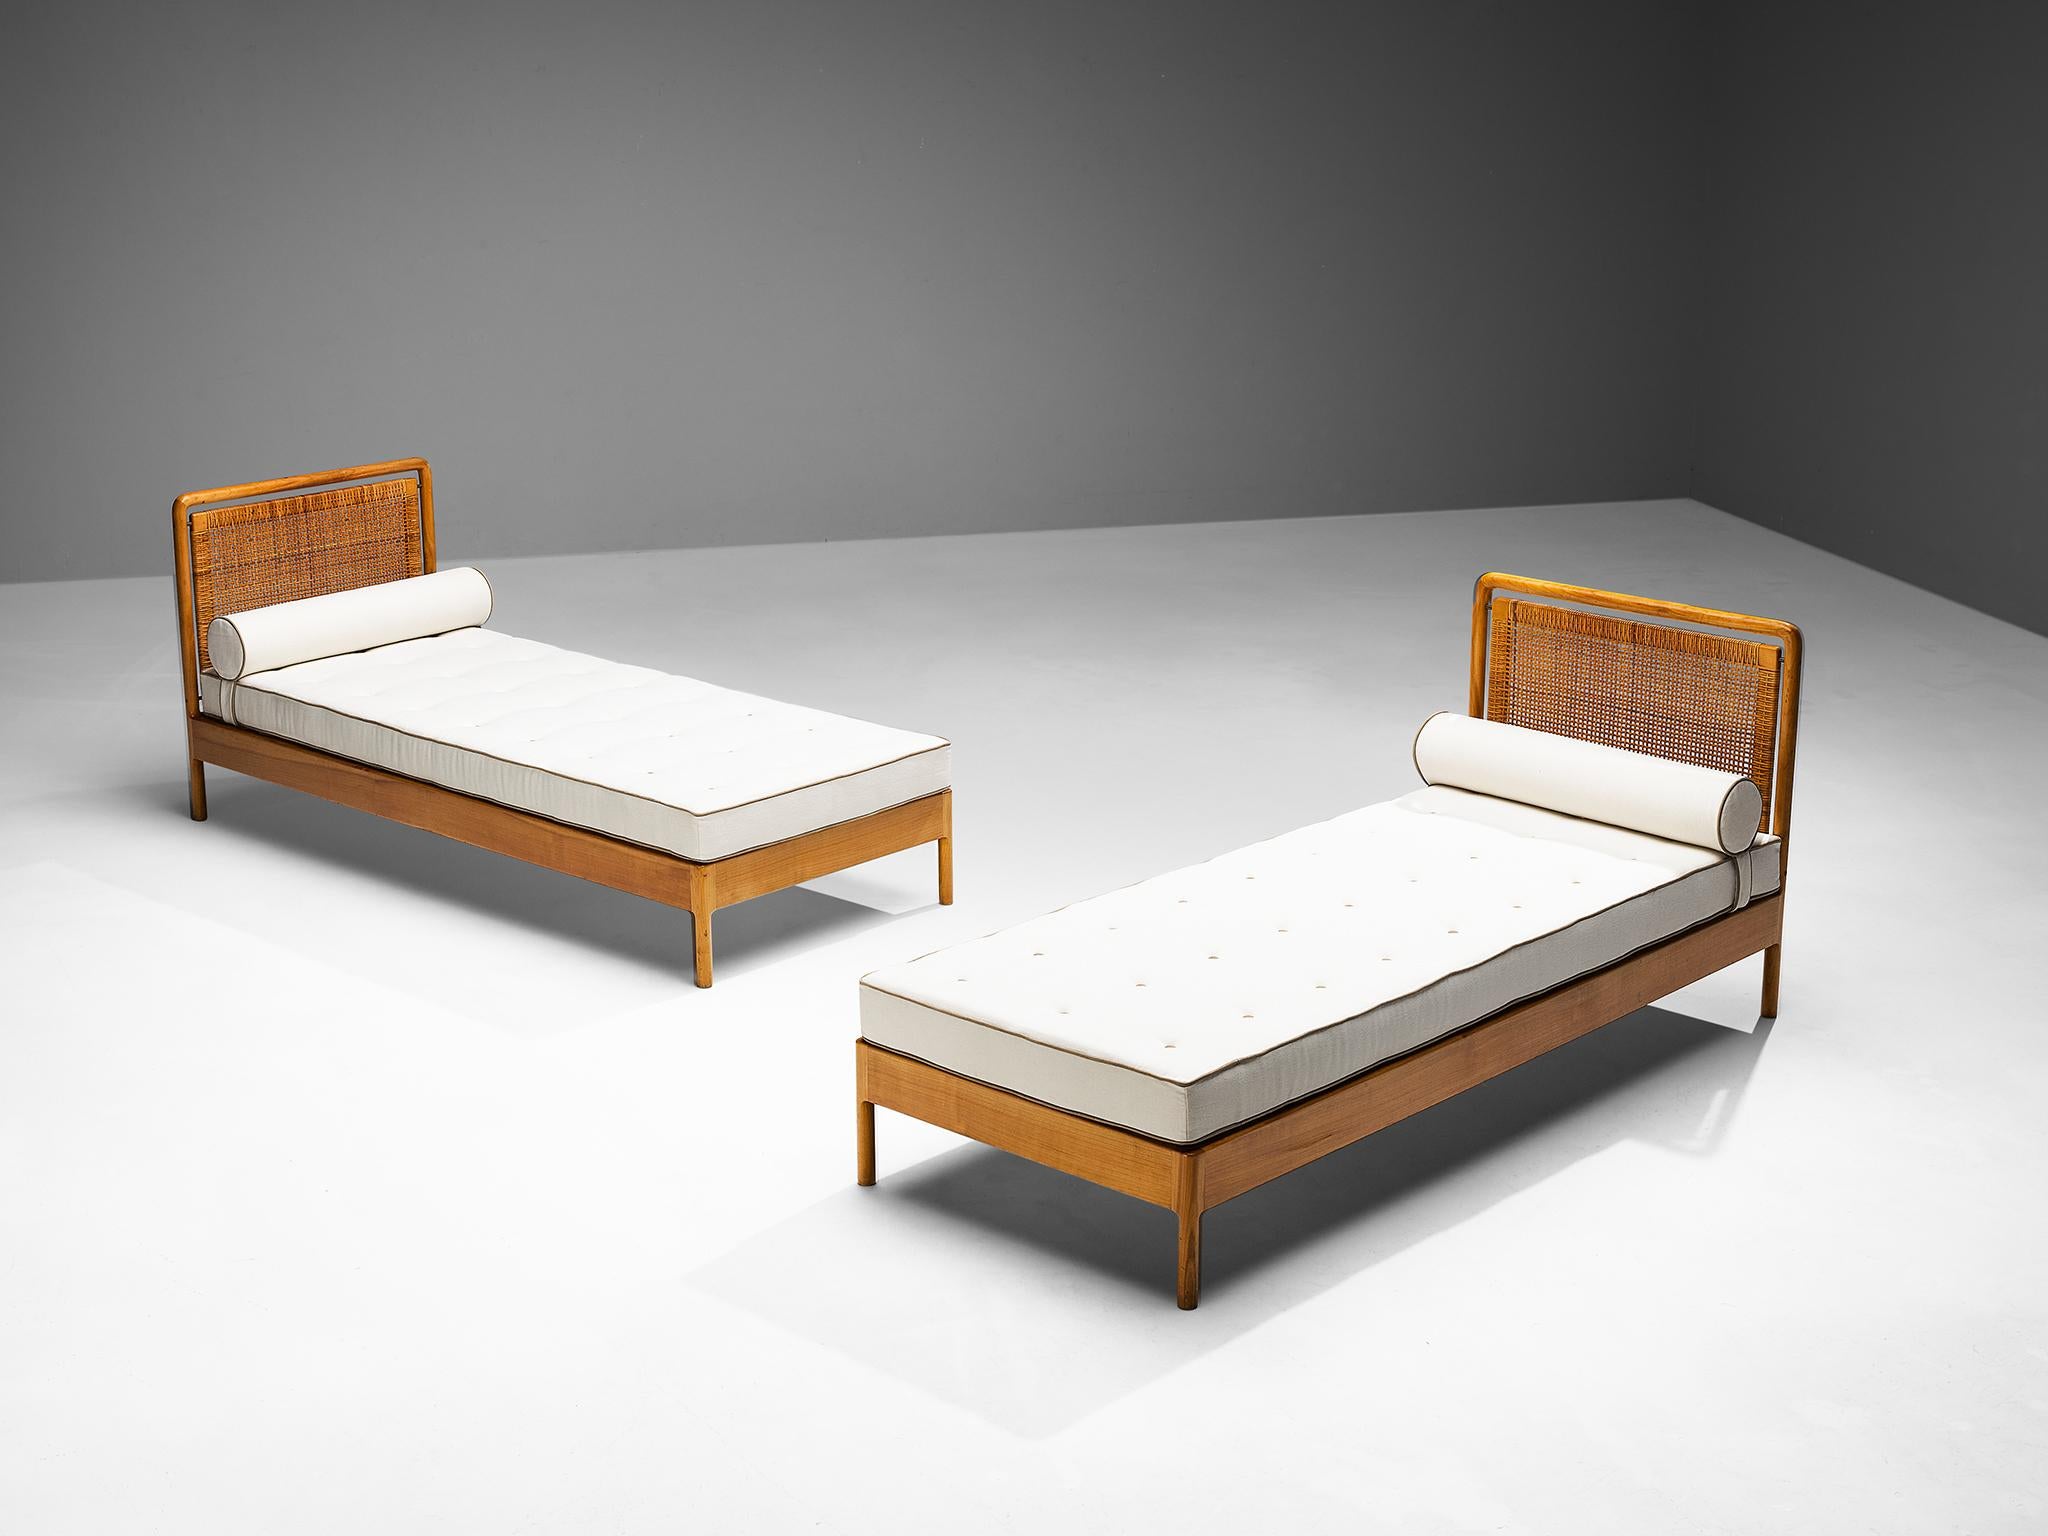 Liegestühle, Ulme, Schilfrohr, Skandinavien, 1950er Jahre.

Ein einfaches und minimalistisches Bettpaar, das in den 1950er Jahren in Skandinavien entworfen wurde. Die Konstruktion basiert auf klaren Linien und kantigen Formen. Sein schlichtes und